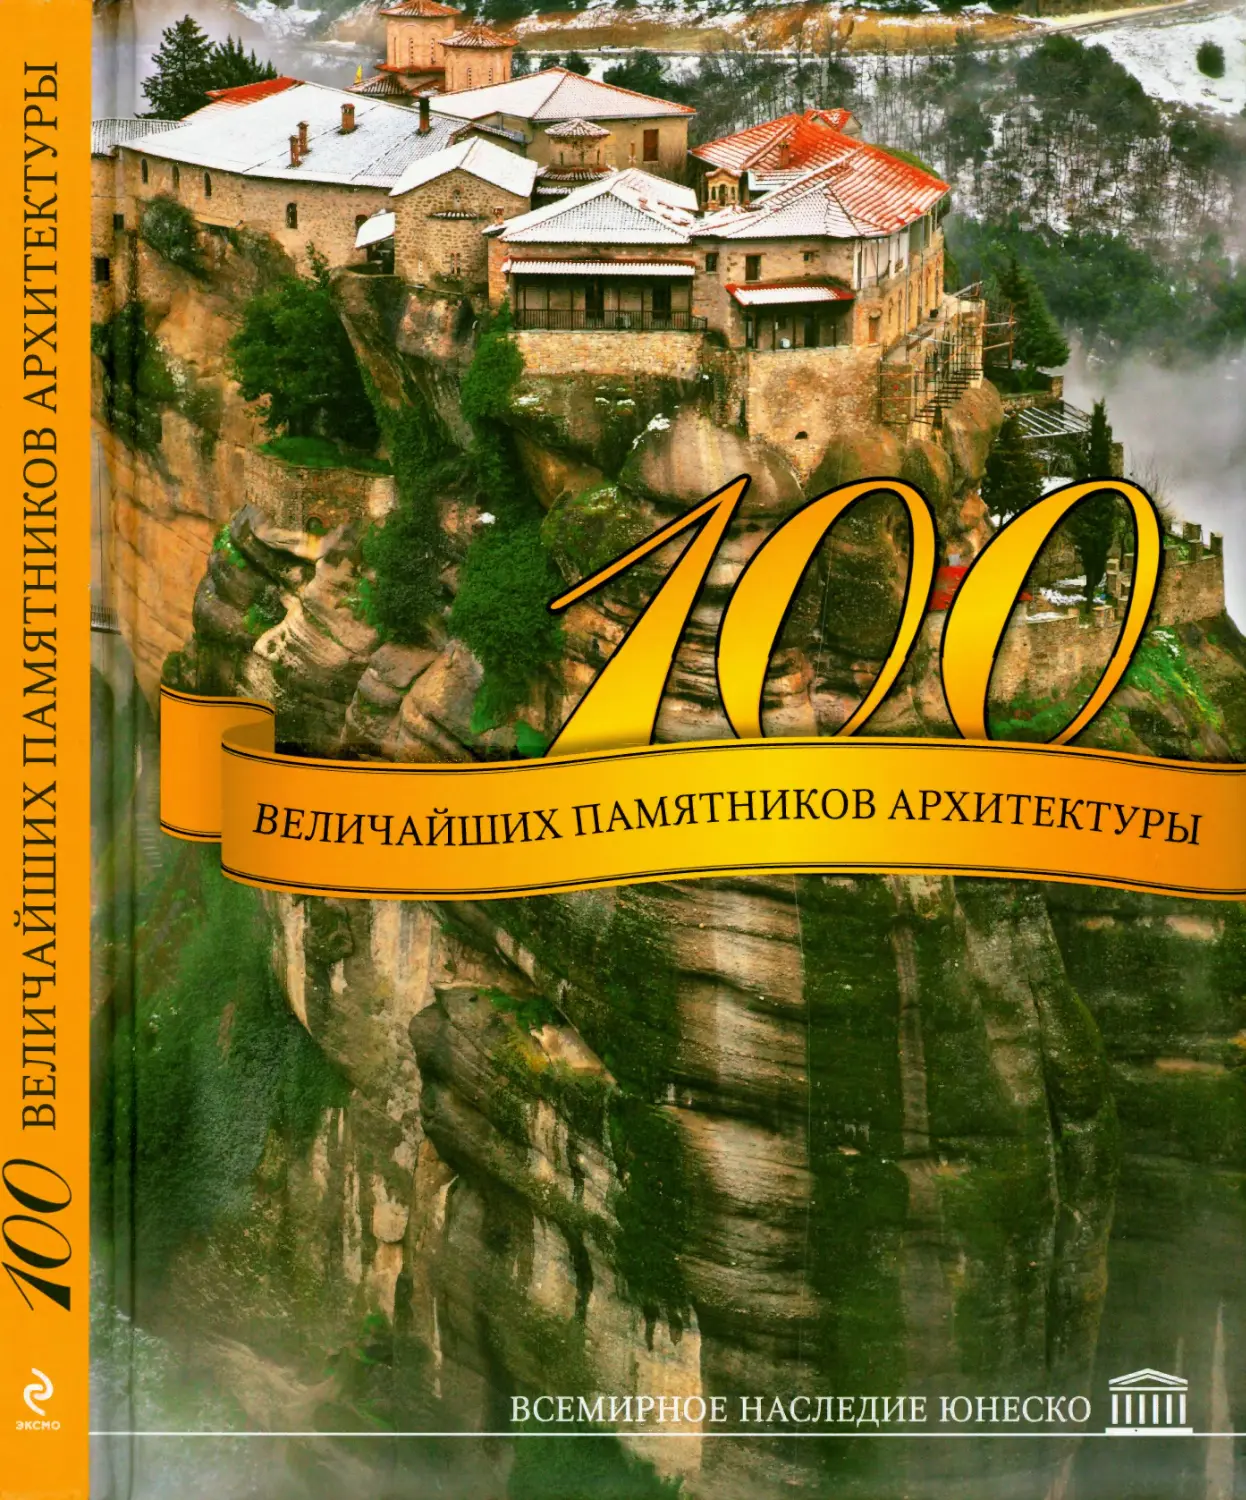 Георгиенко Ф.А., Дроздова Е.В., Кигим Т.В. 100 величайших памятников архитектуры. Всемирное наследие ЮНЕСКО. 2012